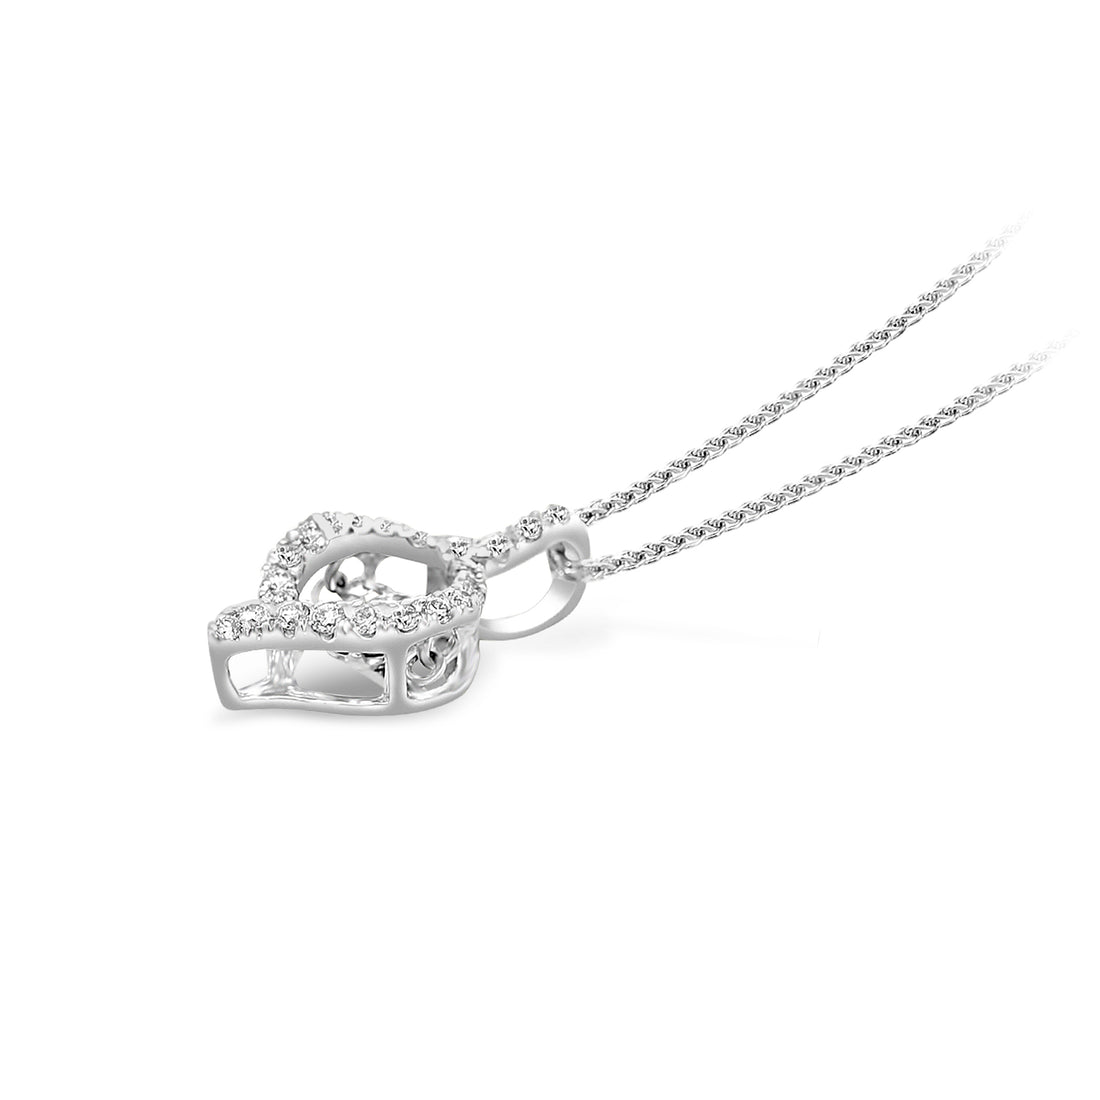 Diamond Pendant Necklace - .18 Carat